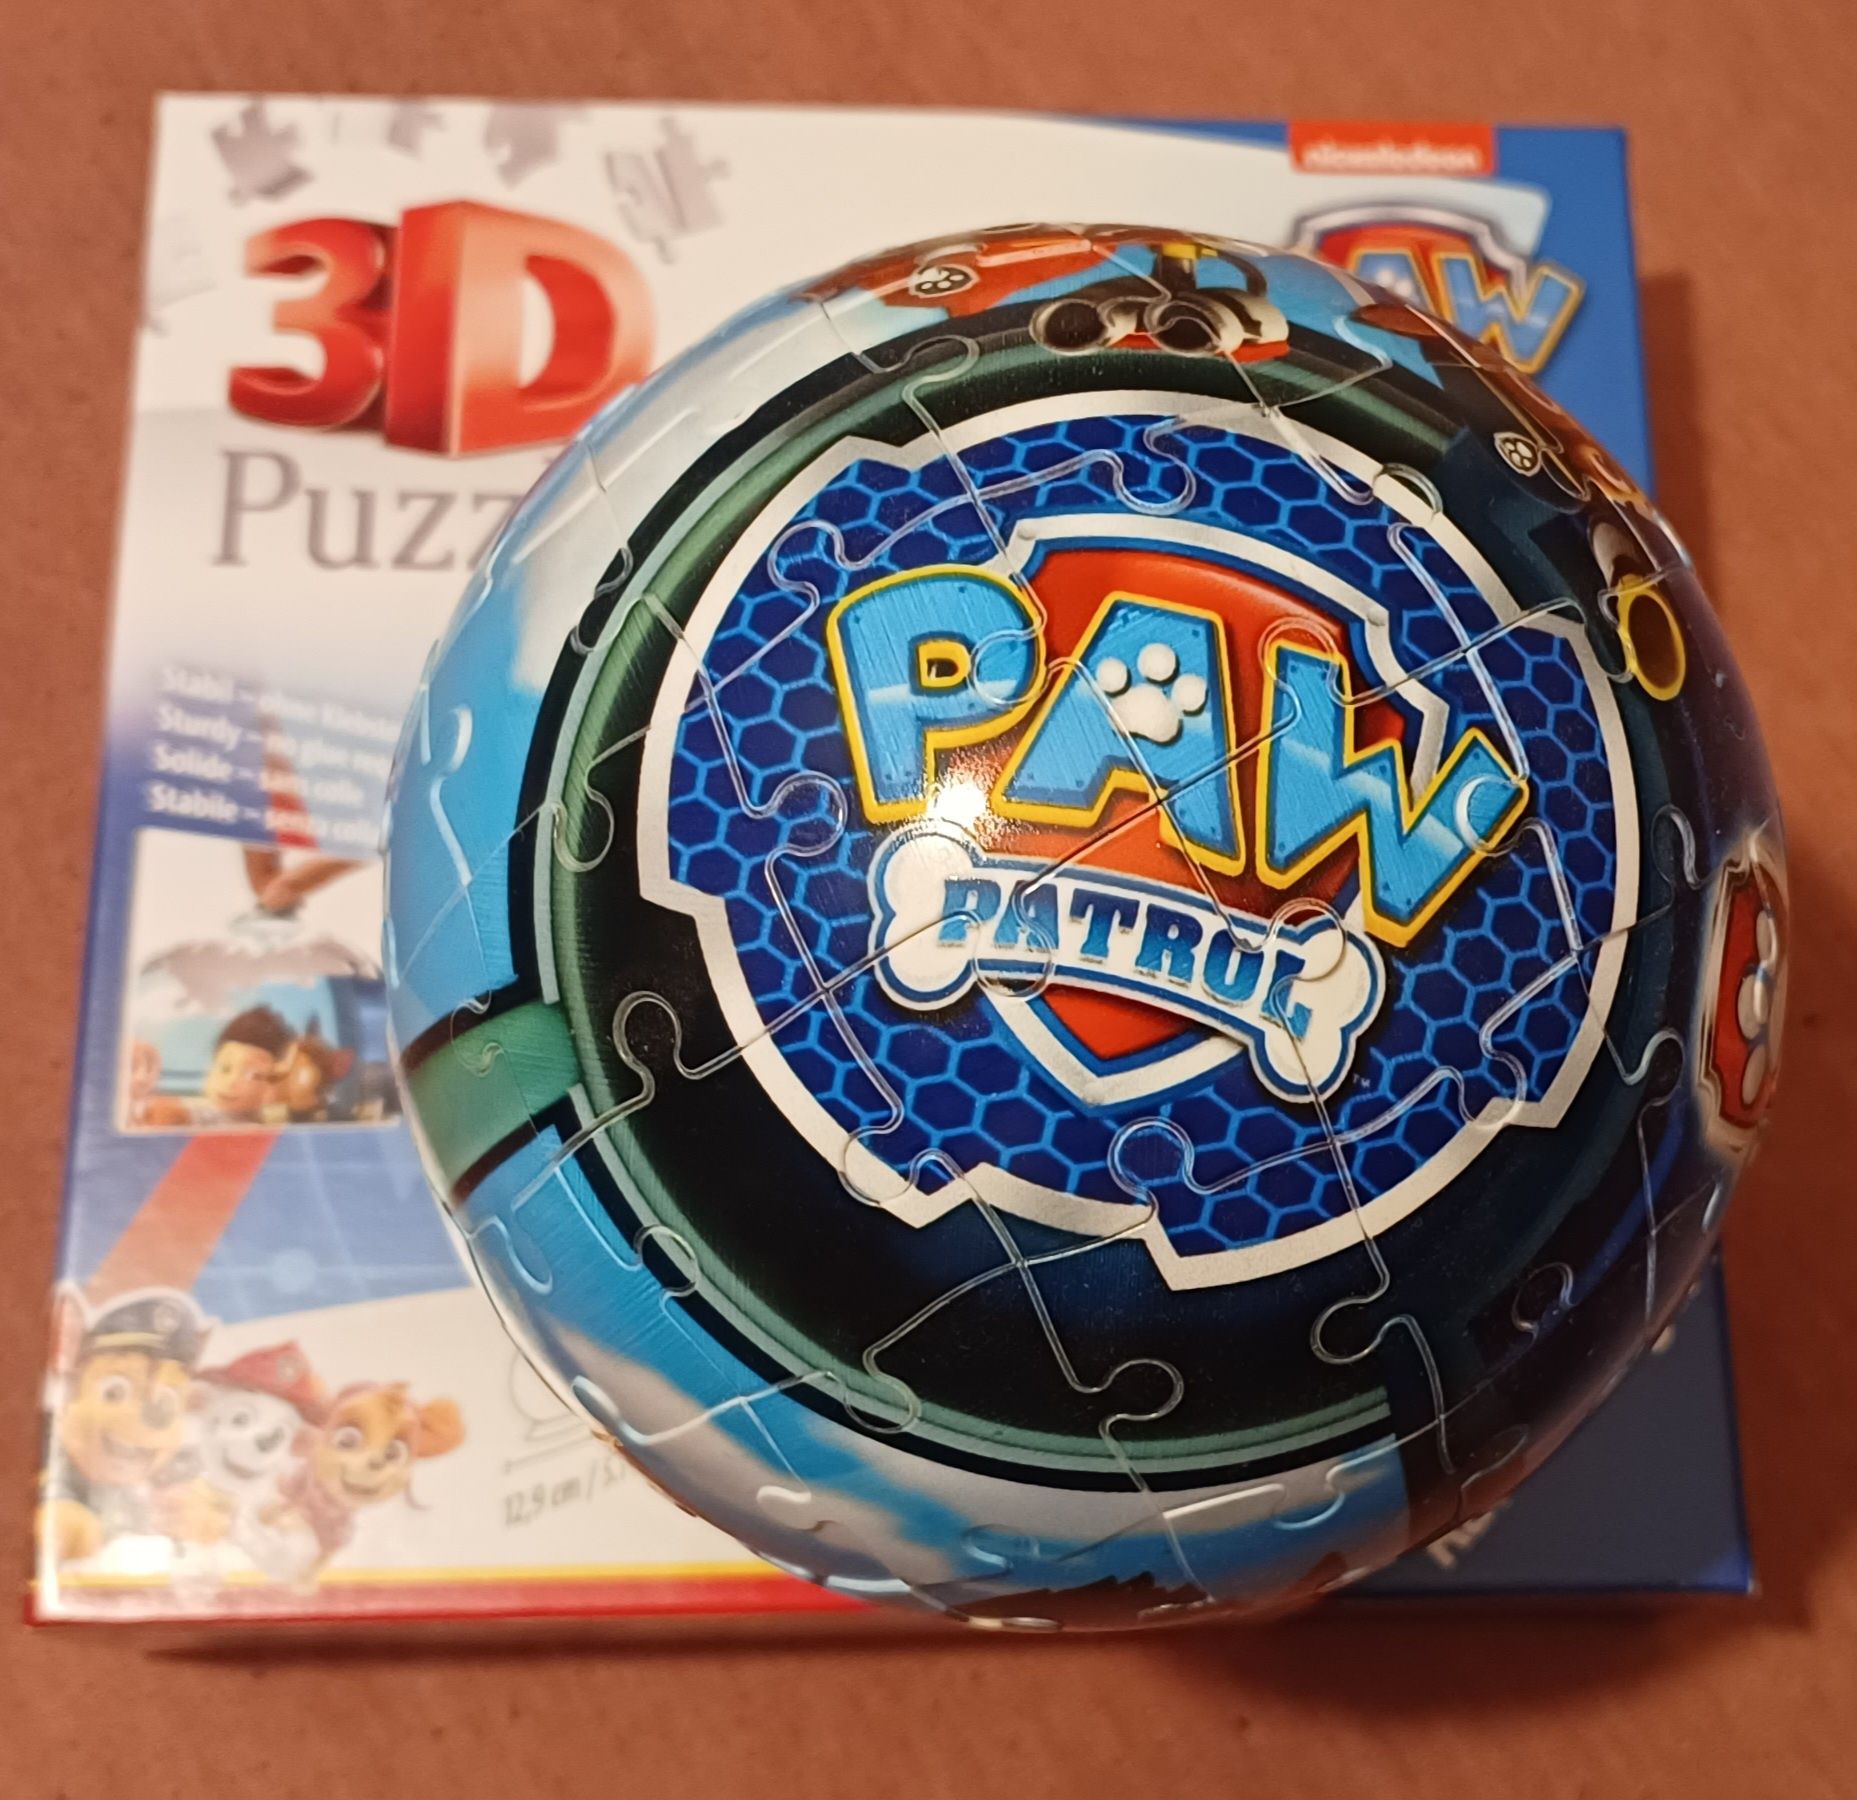 Puzzle 3D Kula: Psi Patrol 72 elementy

Twórz wyjątkowe konstrukcje 3D